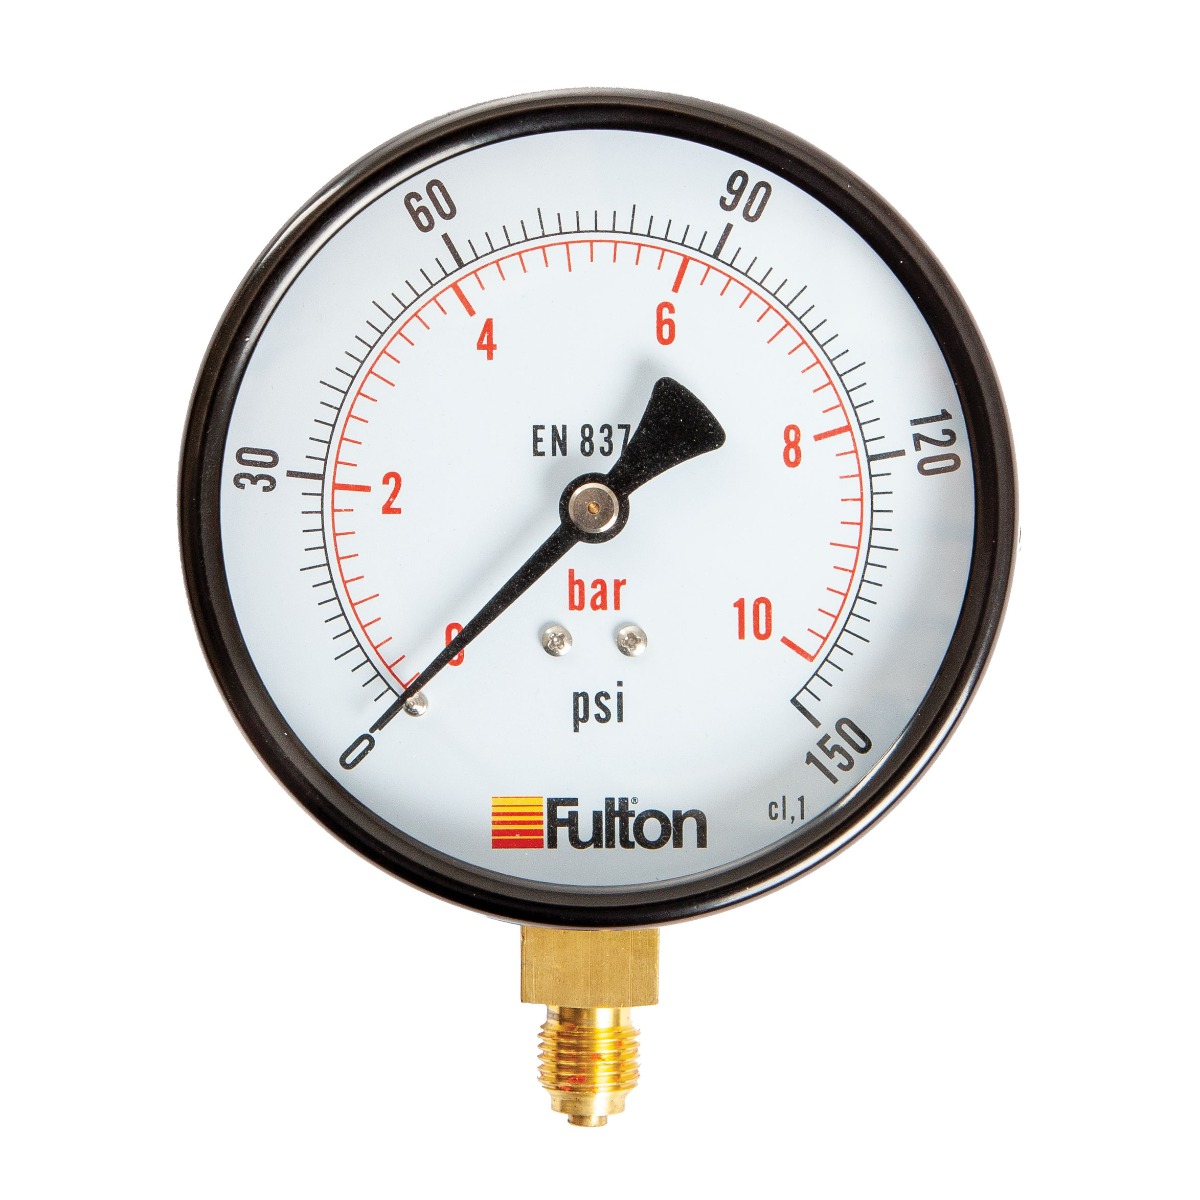 Fulton 4" Pressure Gauge 0-10 Bar 1/4" BSP Bottom Connection